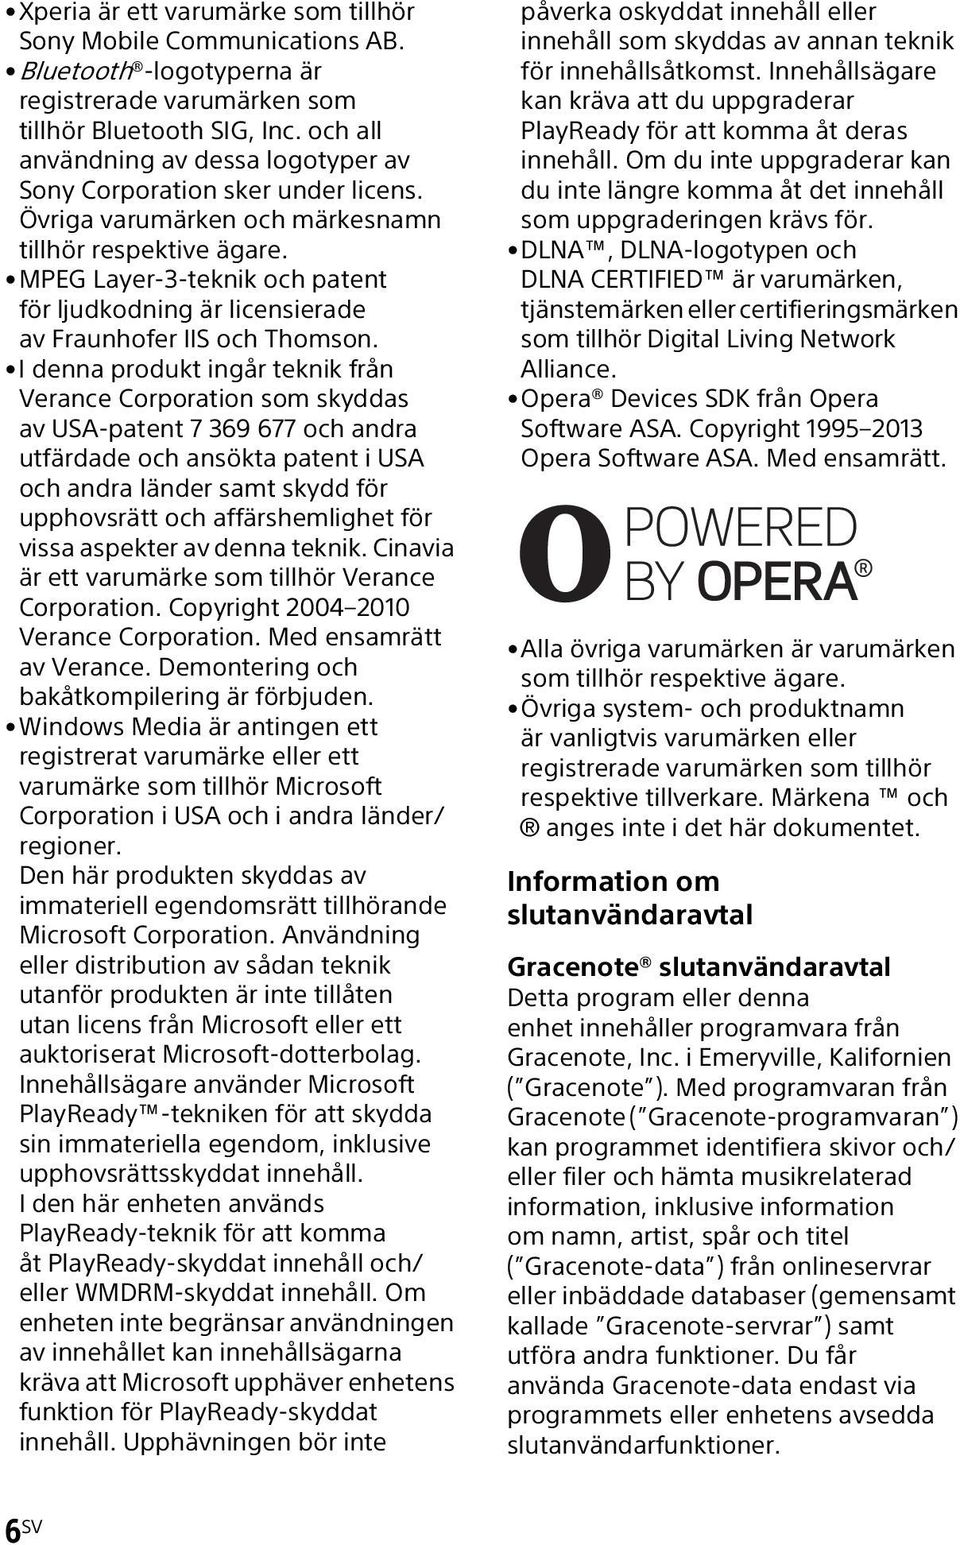 MPEG Layer-3-teknik och patent för ljudkodning är licensierade av Fraunhofer IIS och Thomson.